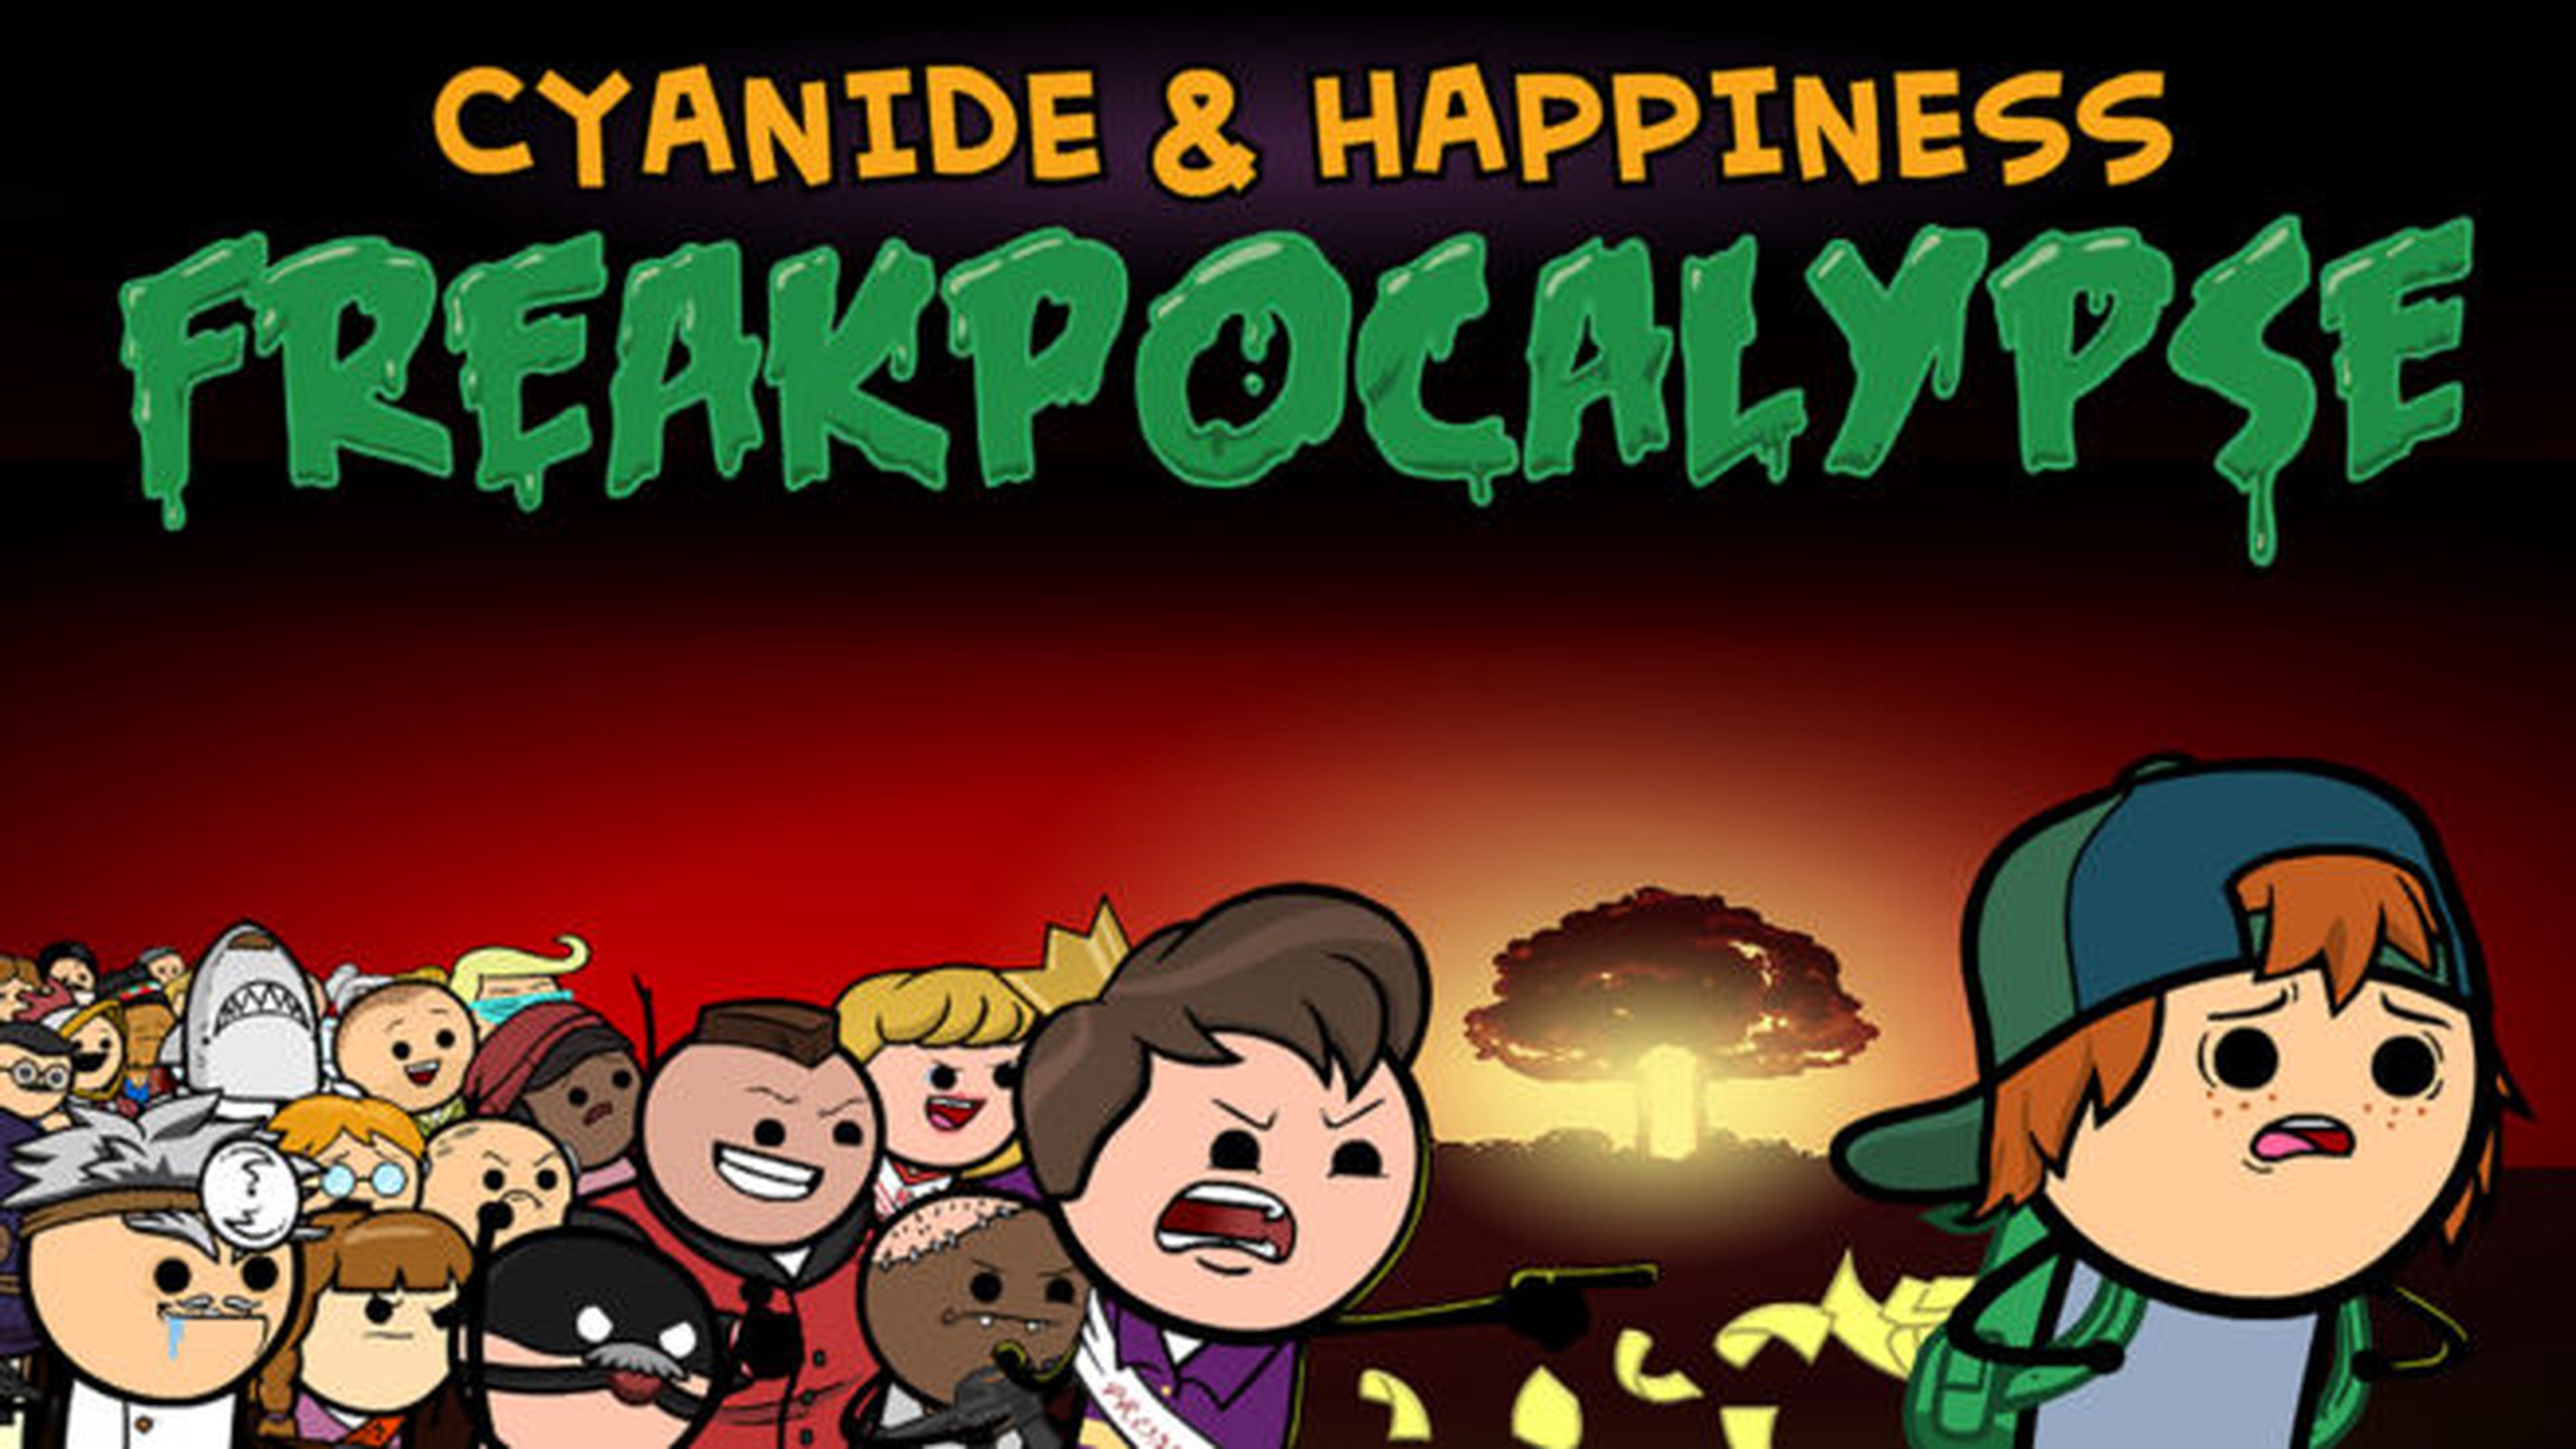 Cyanide and Happiness freakpocalypse